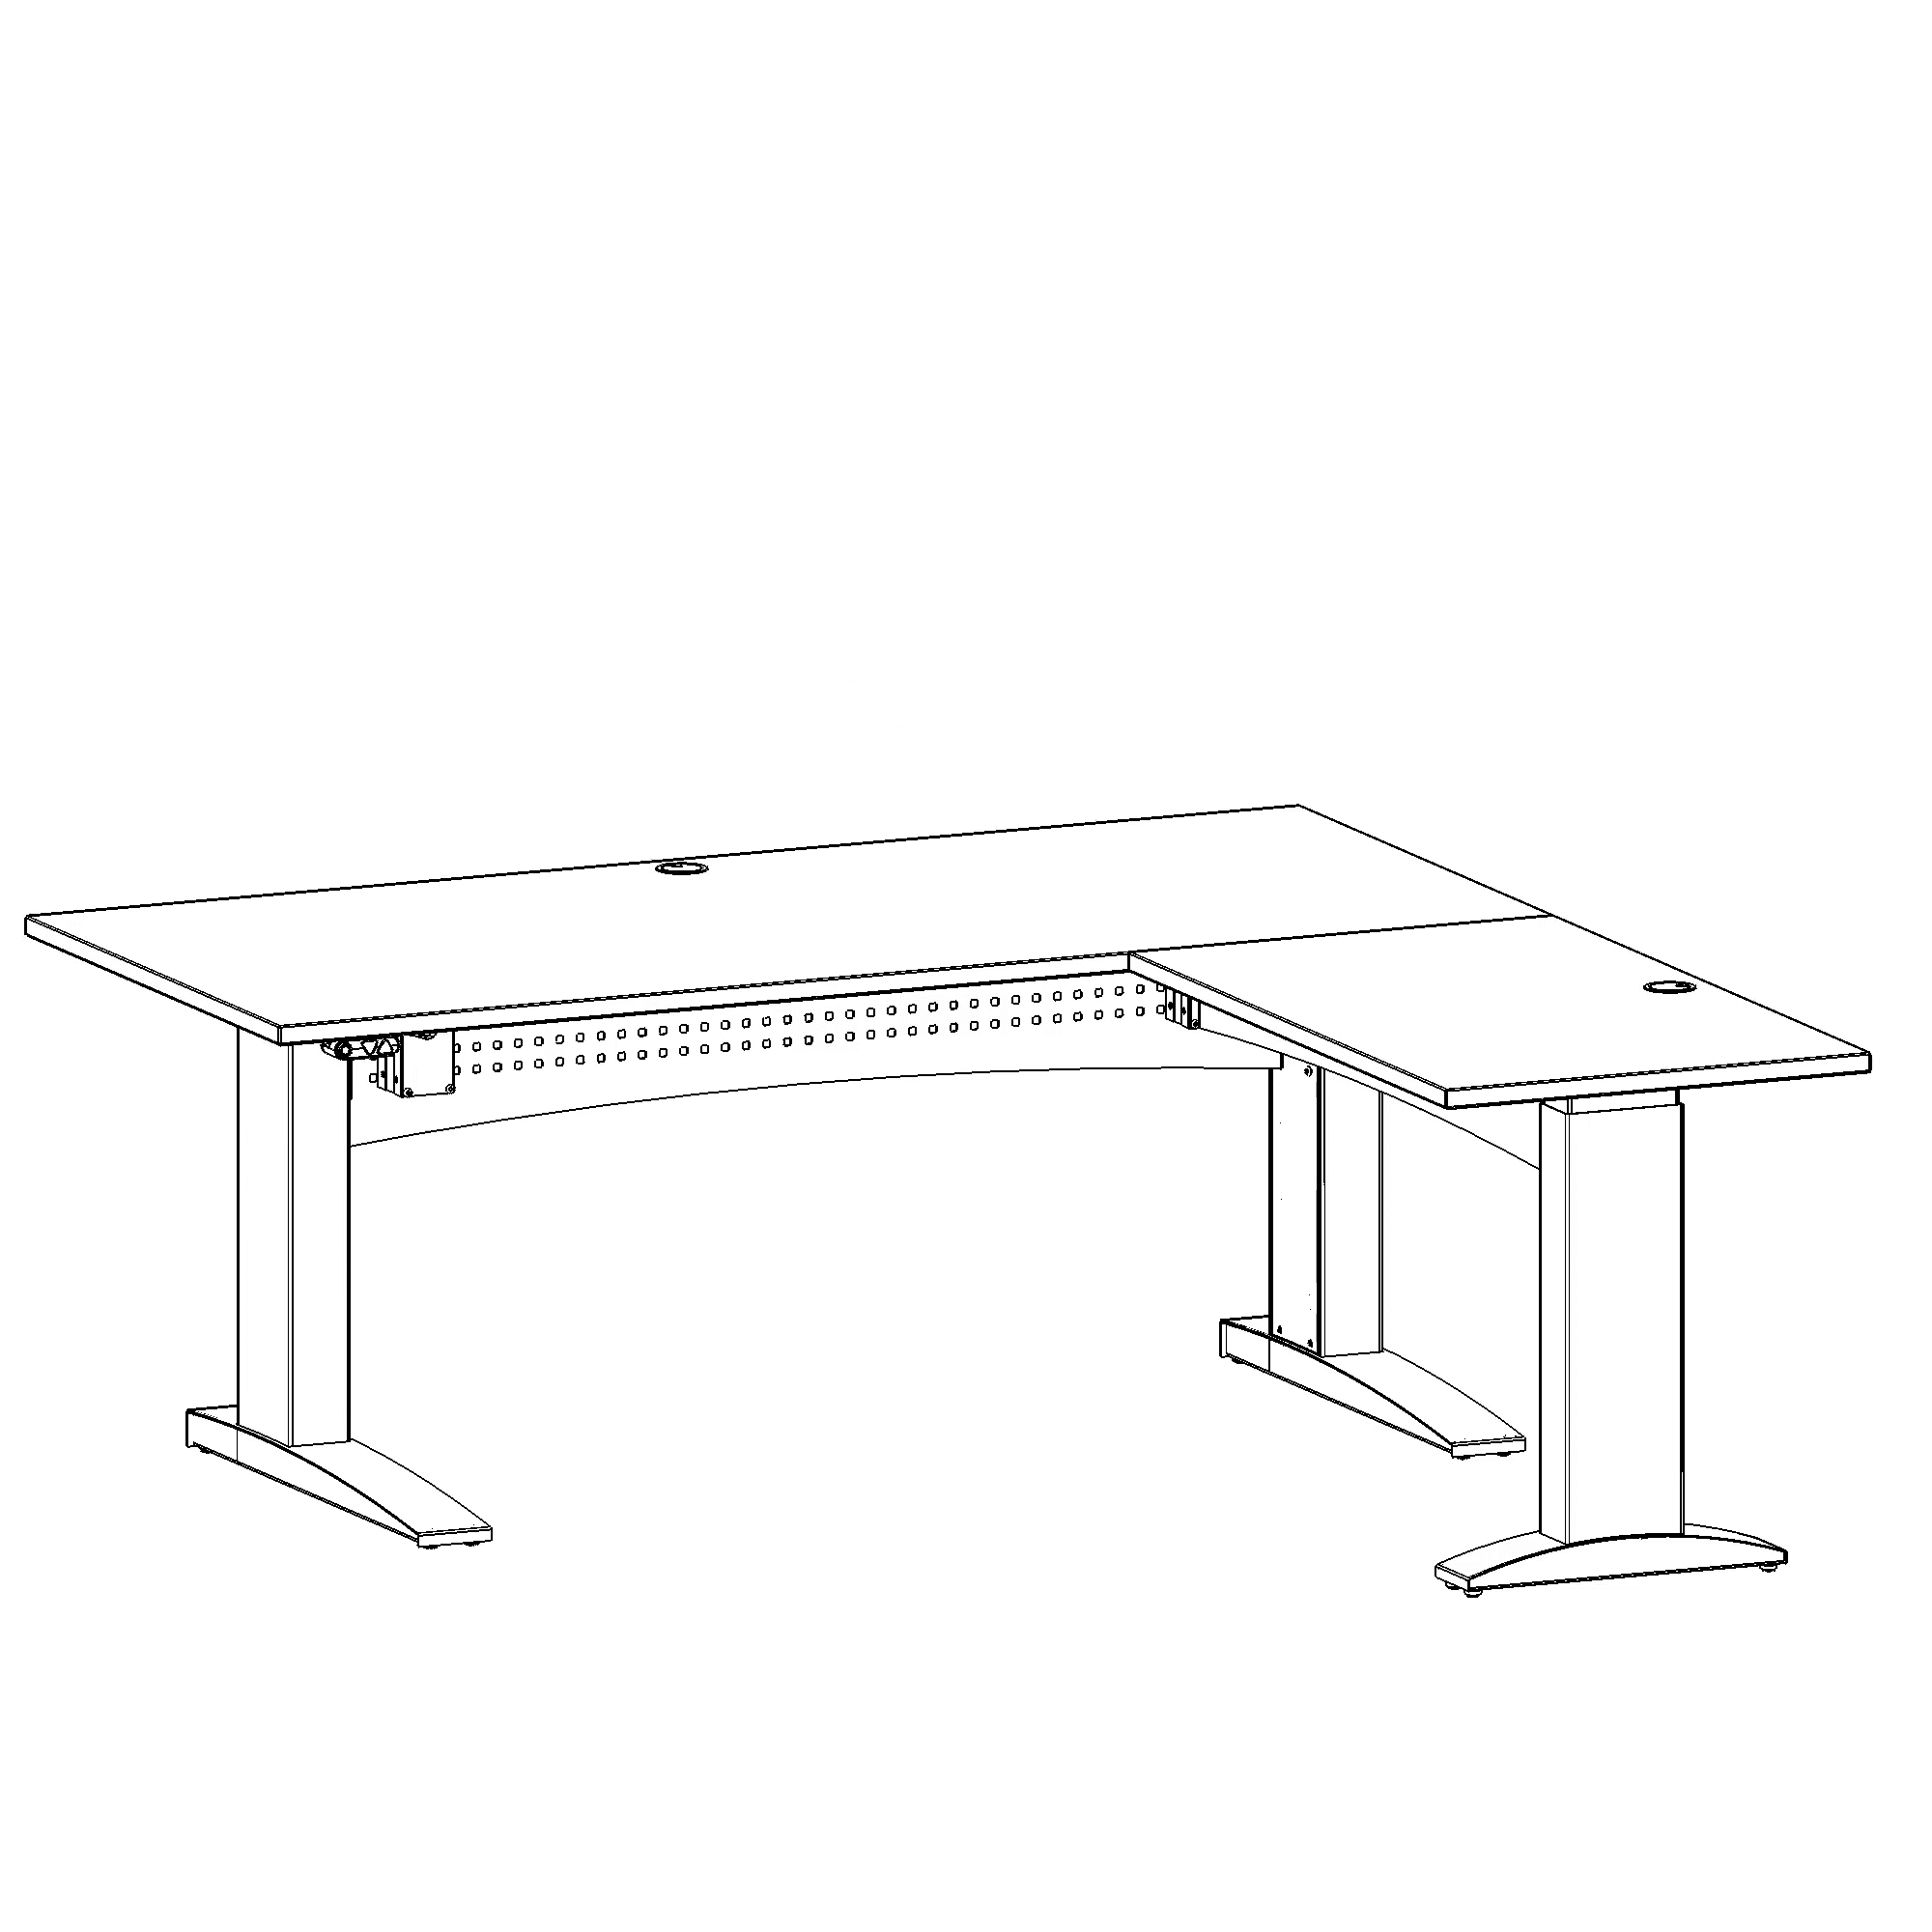 Electric Adjustable Desk | 180x180 cm | Walnut with black frame